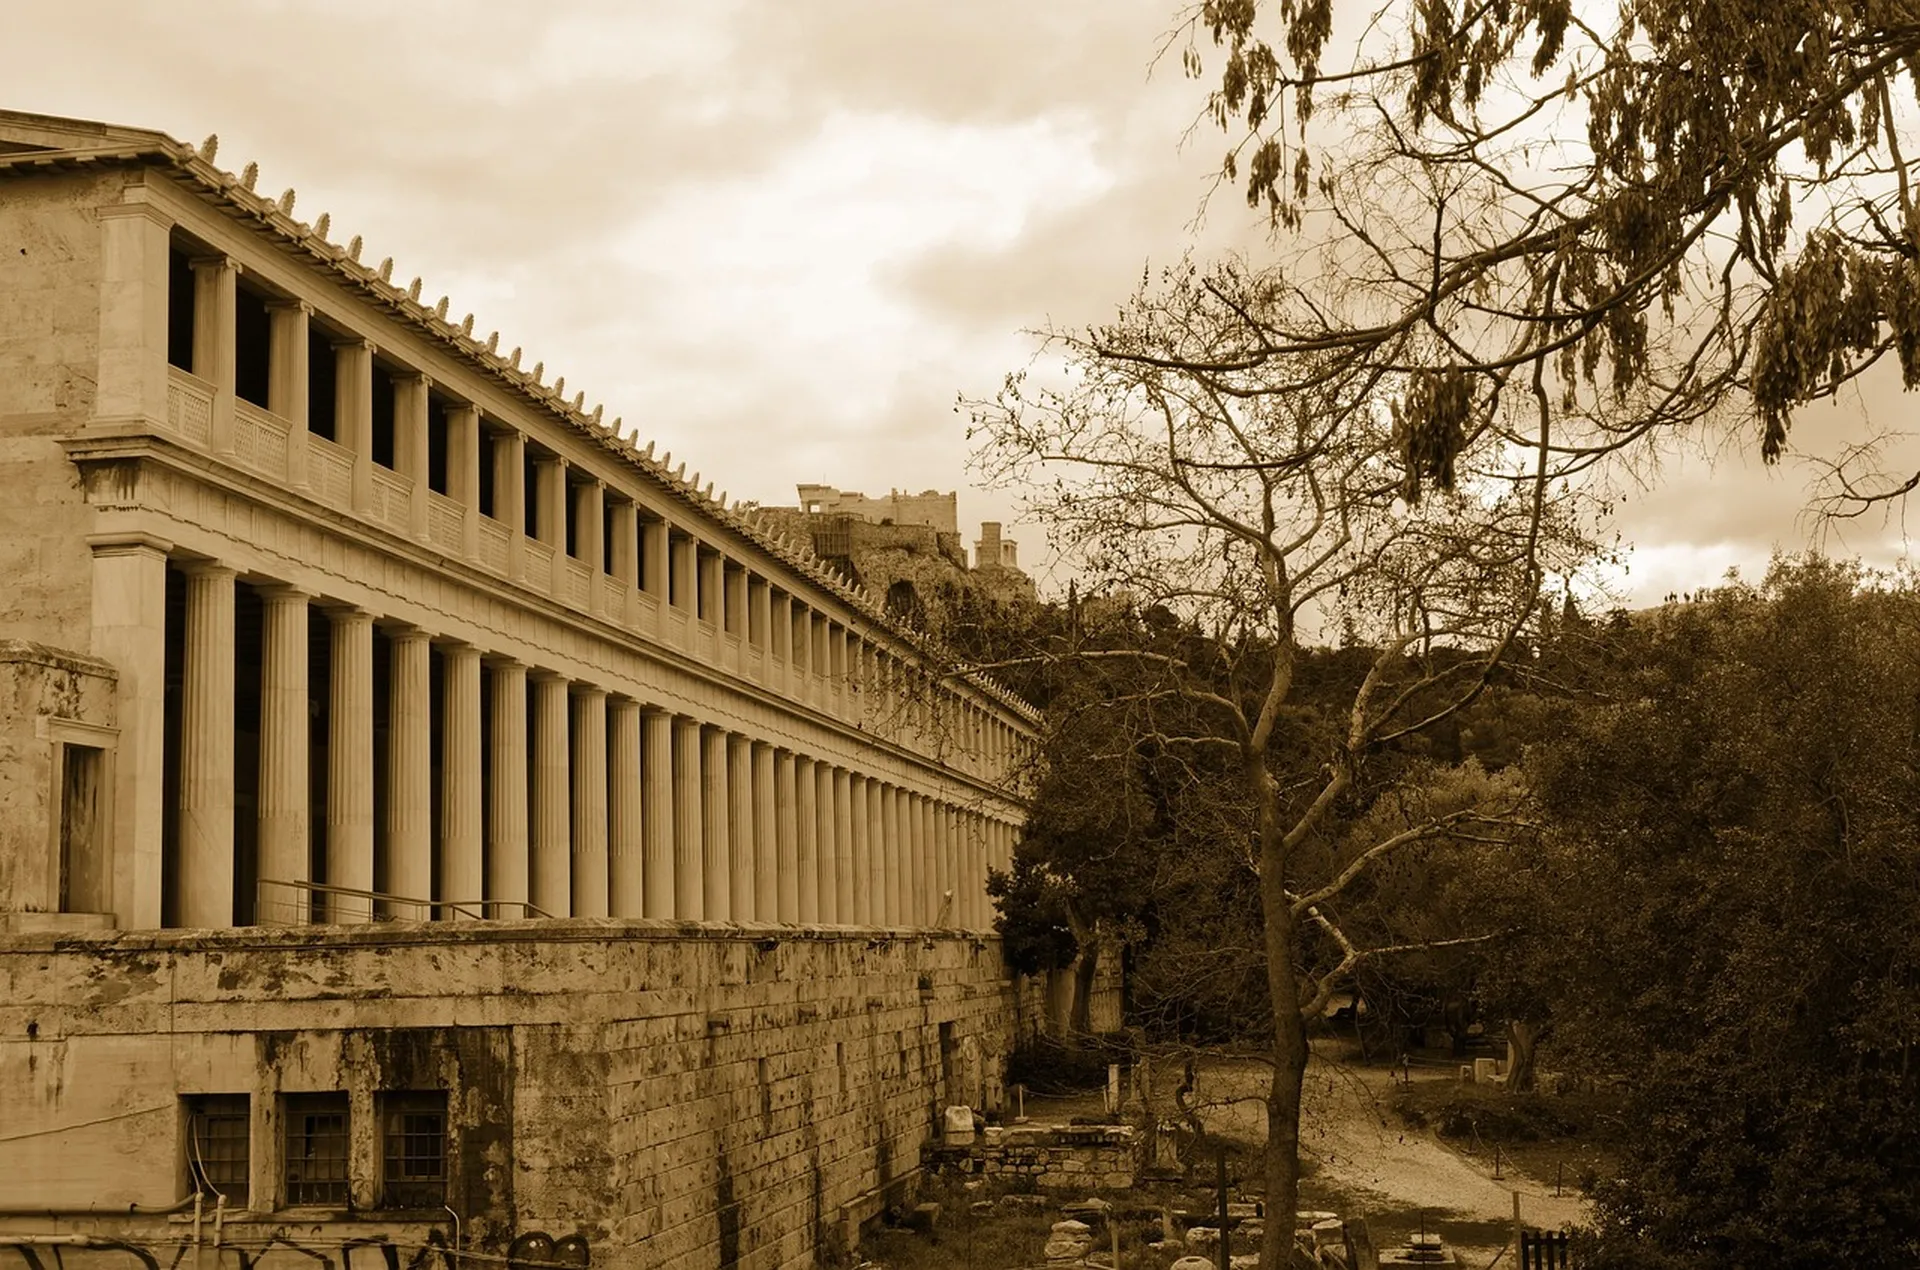 الأغورا القديمة في أثينا الكلاسيكية